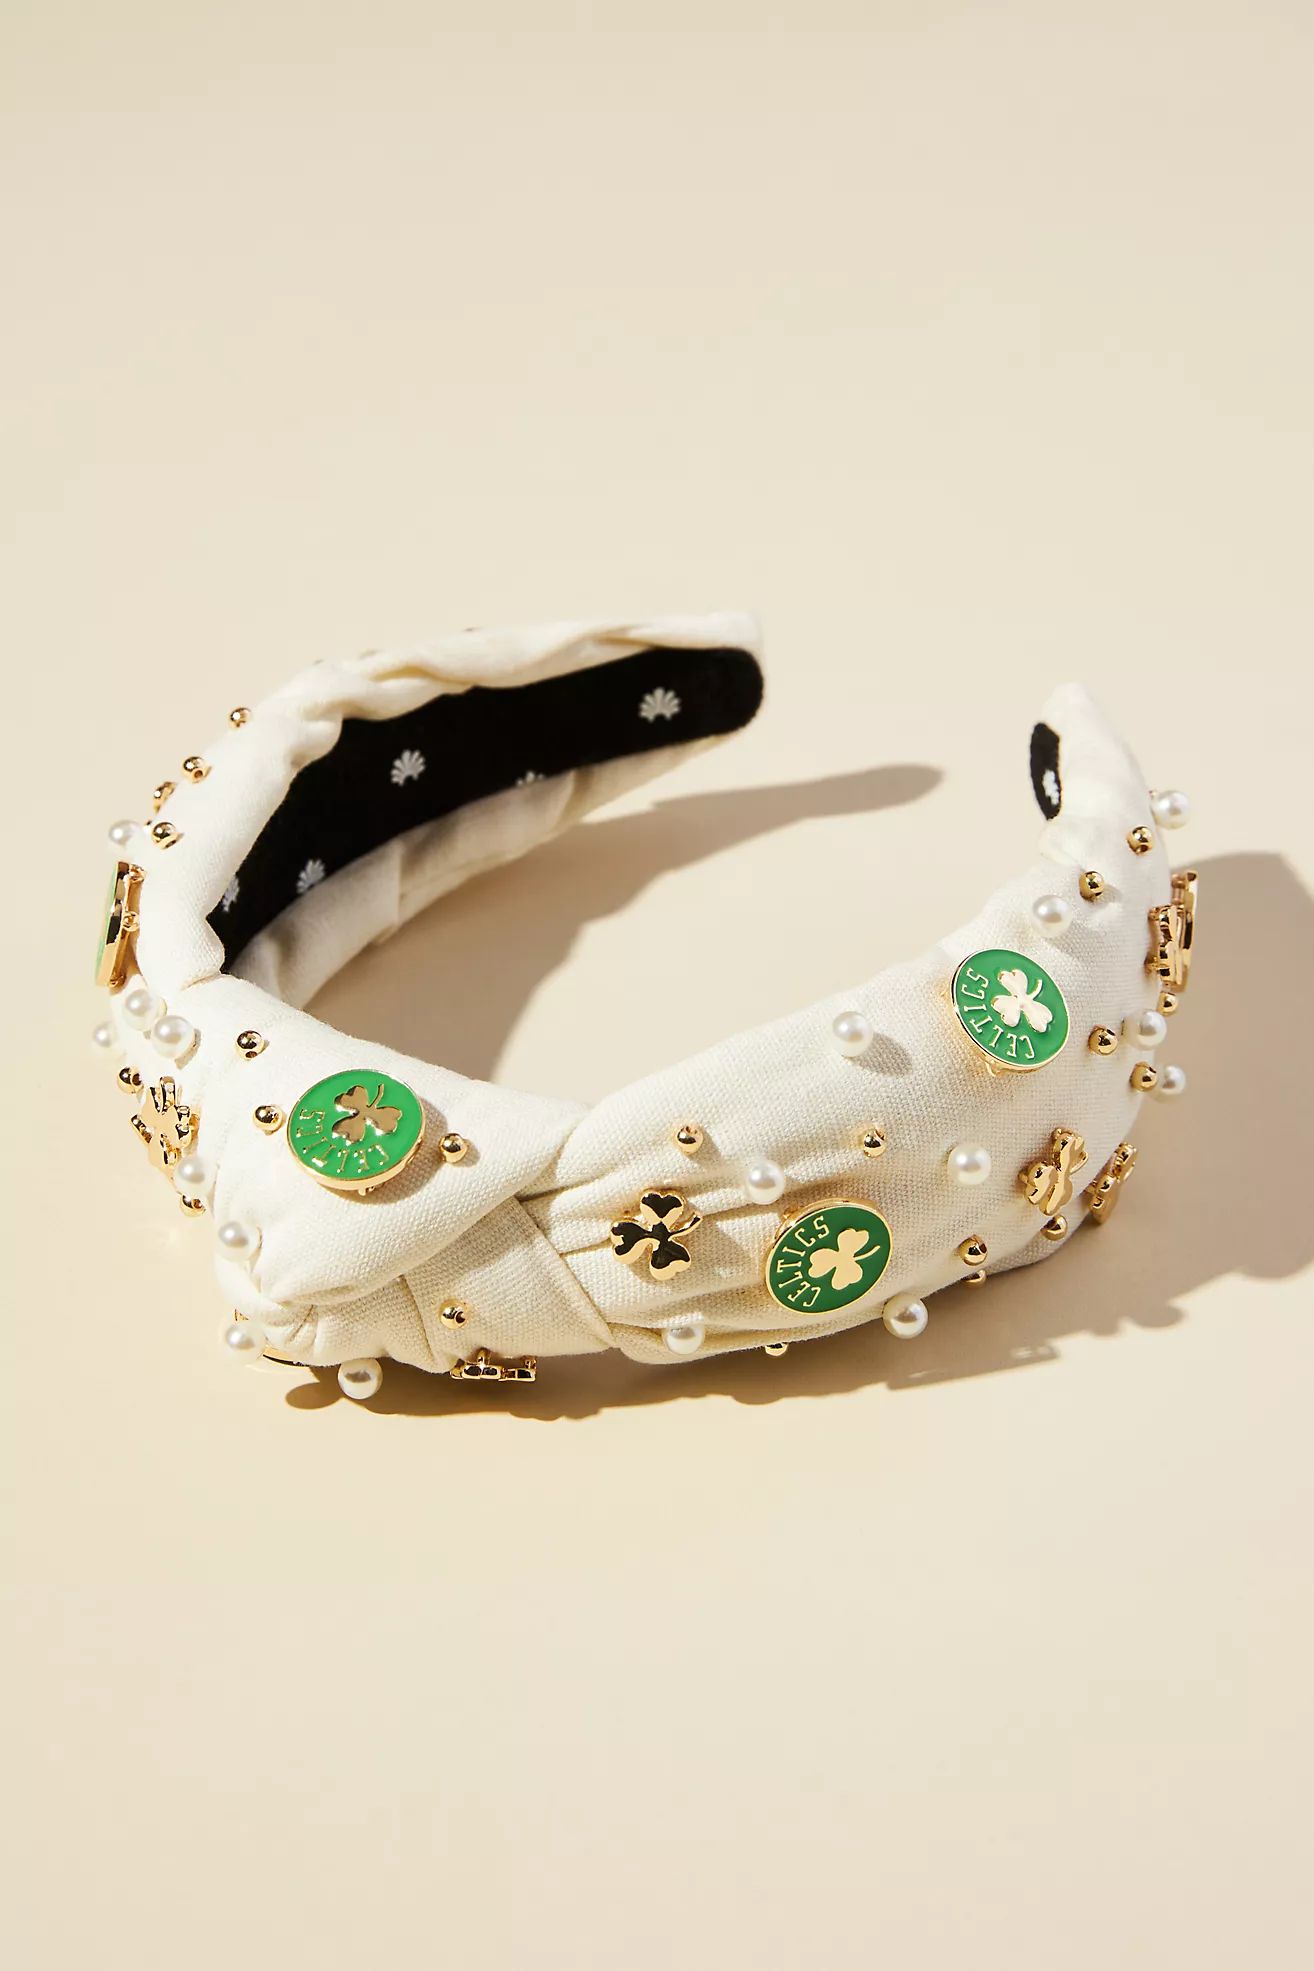 Lele Sadoughi Boston Celtics Embellished Headband | Anthropologie (US)